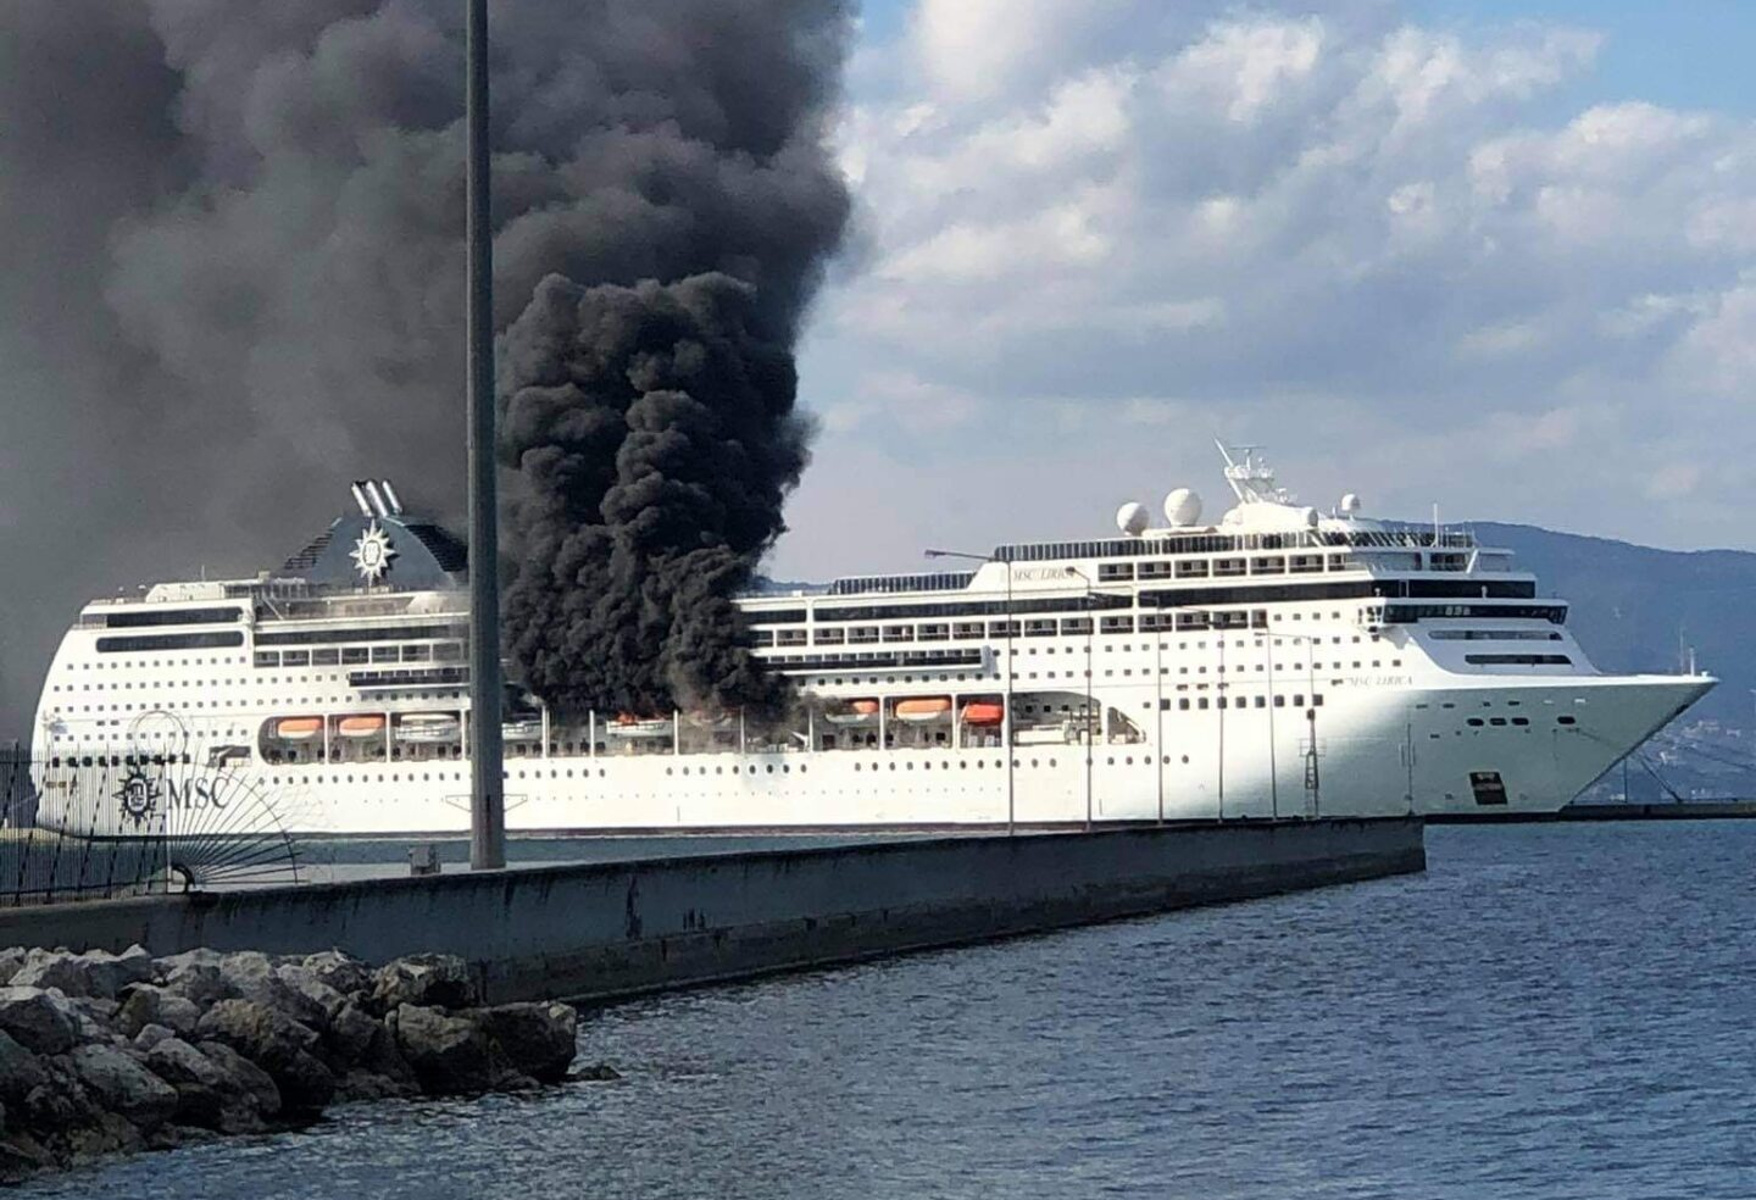 Κέρκυρα: Μεγάλη φωτιά σε κρουαζιερόπλοιο που βρίσκεται στο λιμάνι [βίντεο]